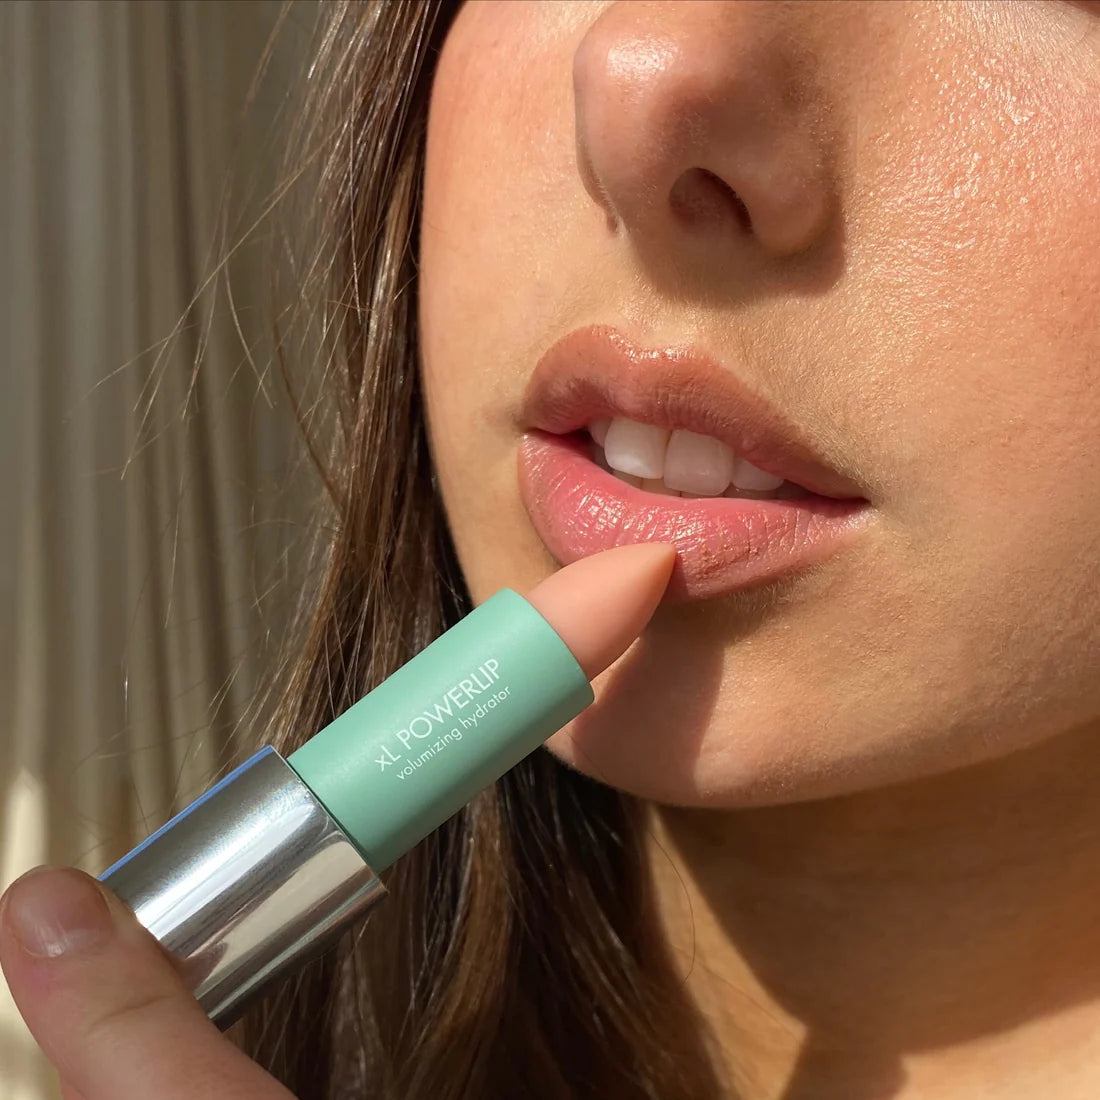 xL POWERLIP refillable lip treatment